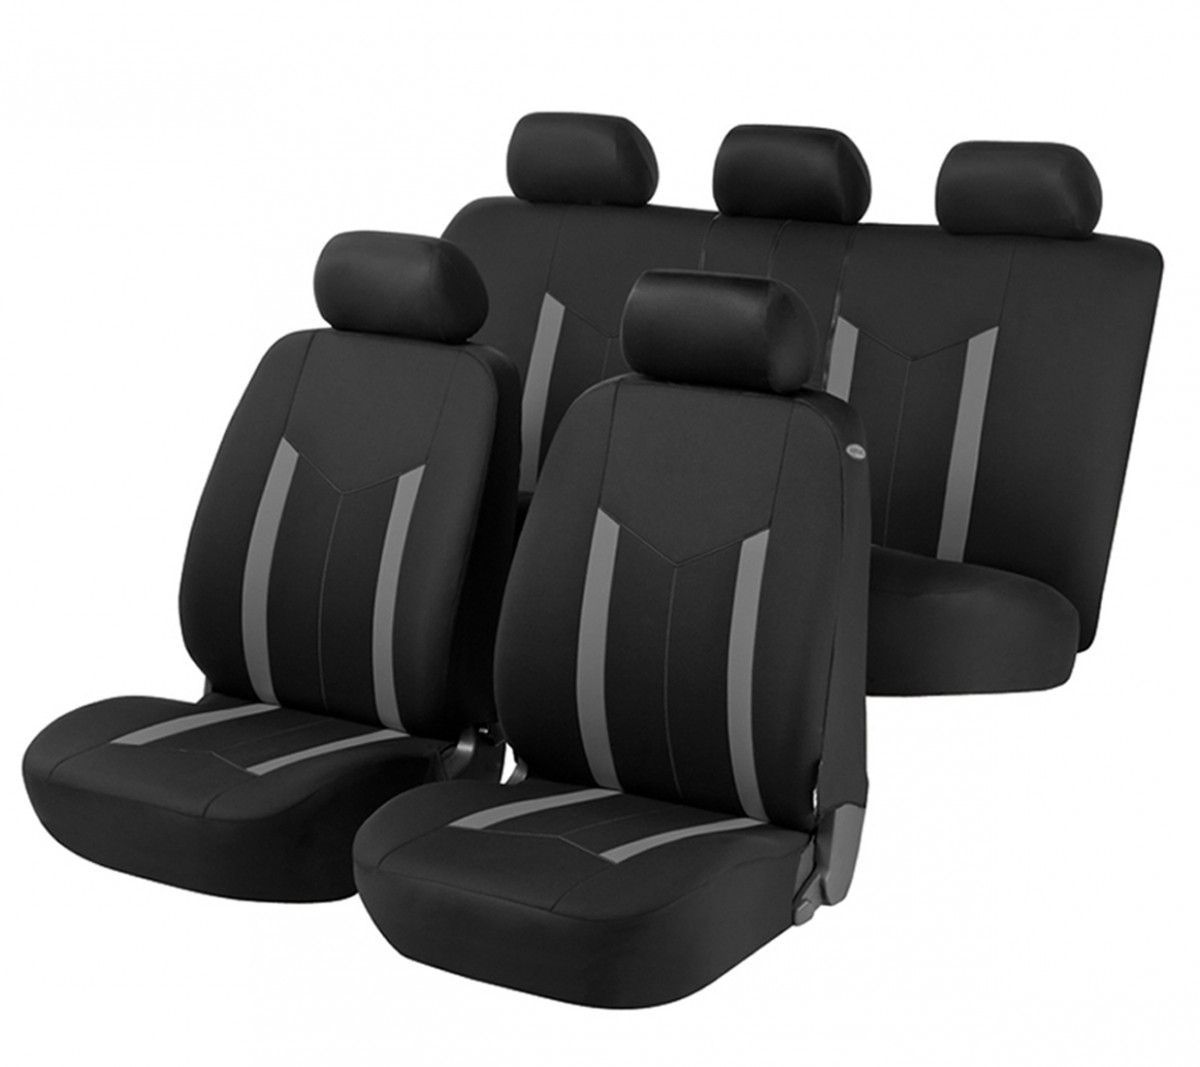 Schwarz-blau Effekt 3D Sitzbezüge für SUZUKI VITARA Autositzbezug VORNE